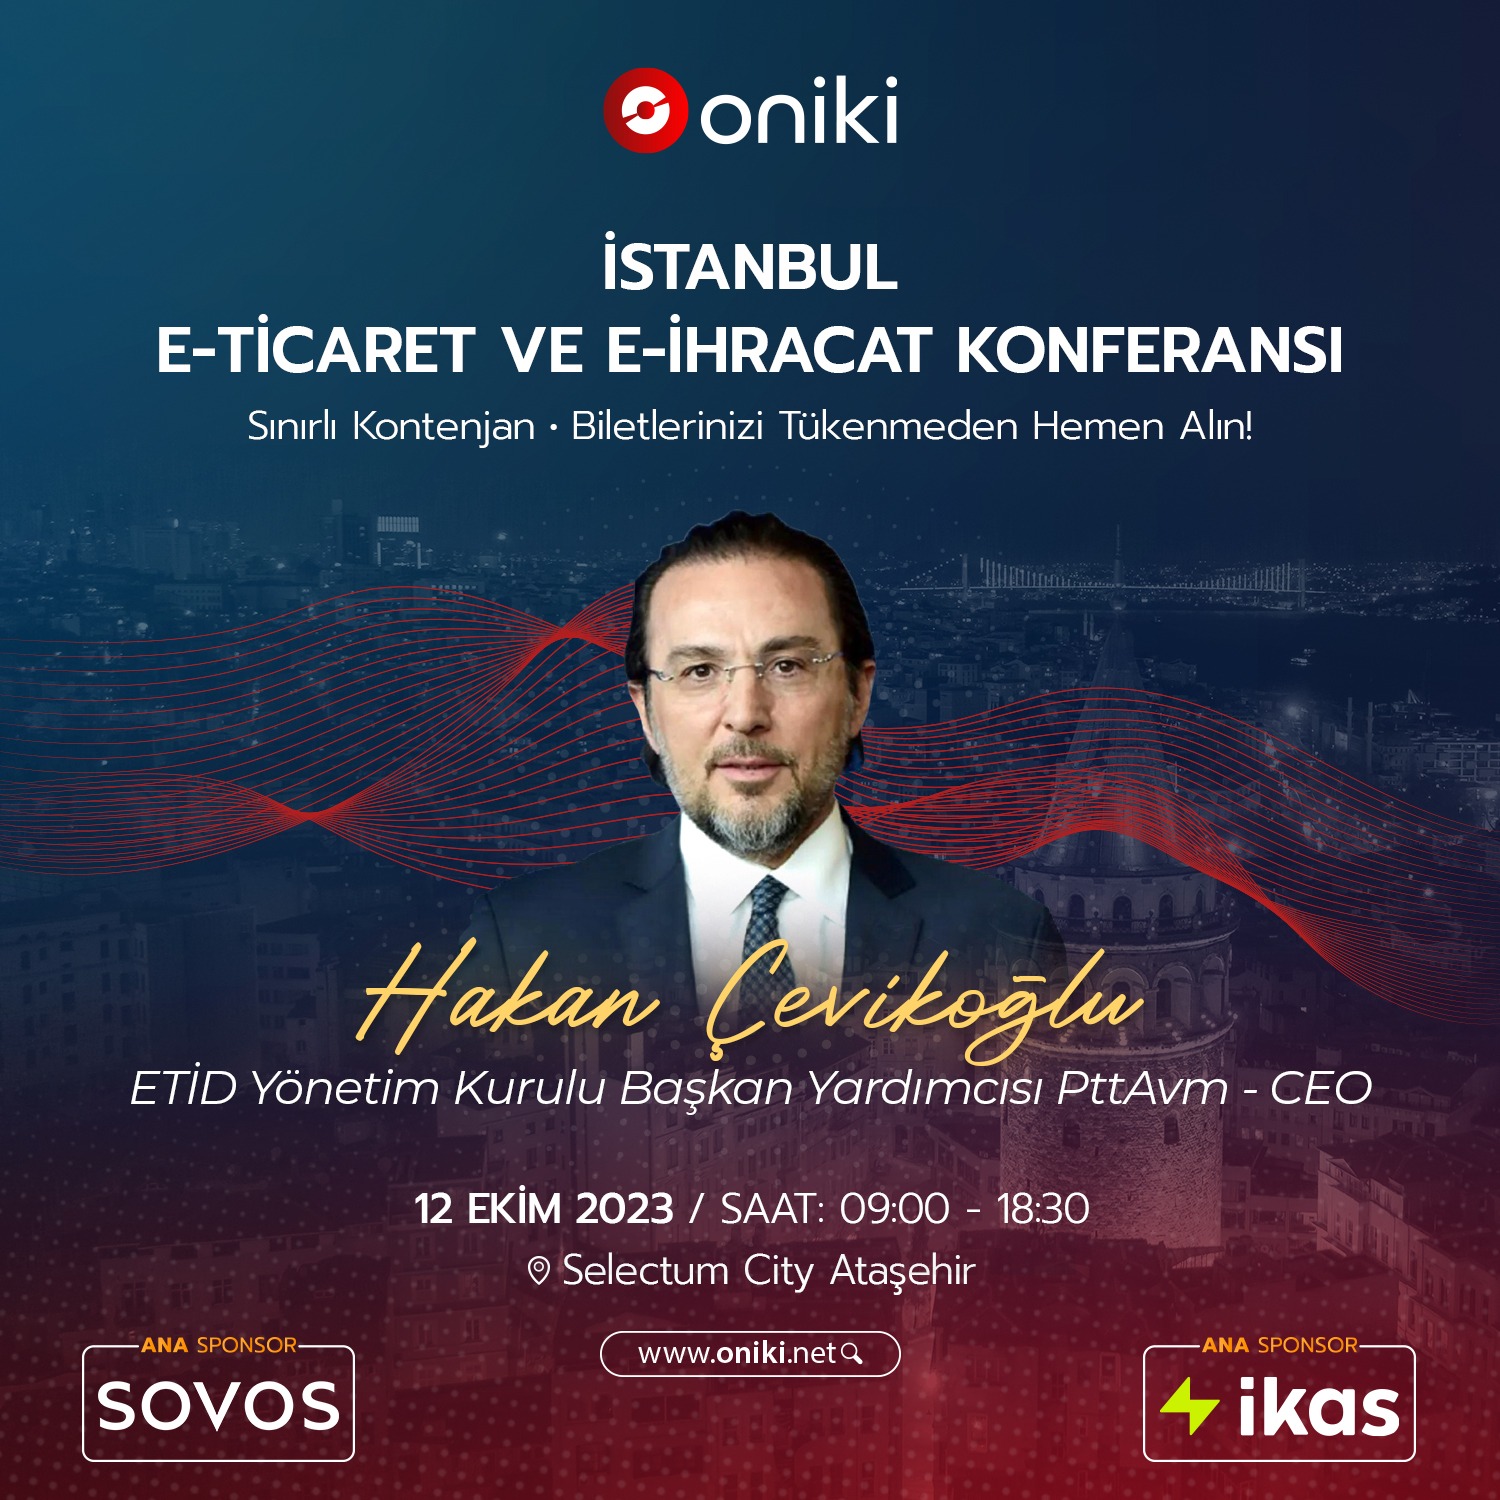 Oniki E-ticaret ve E-ihracat Konferansı Bu Sefer İstanbul’da olacak